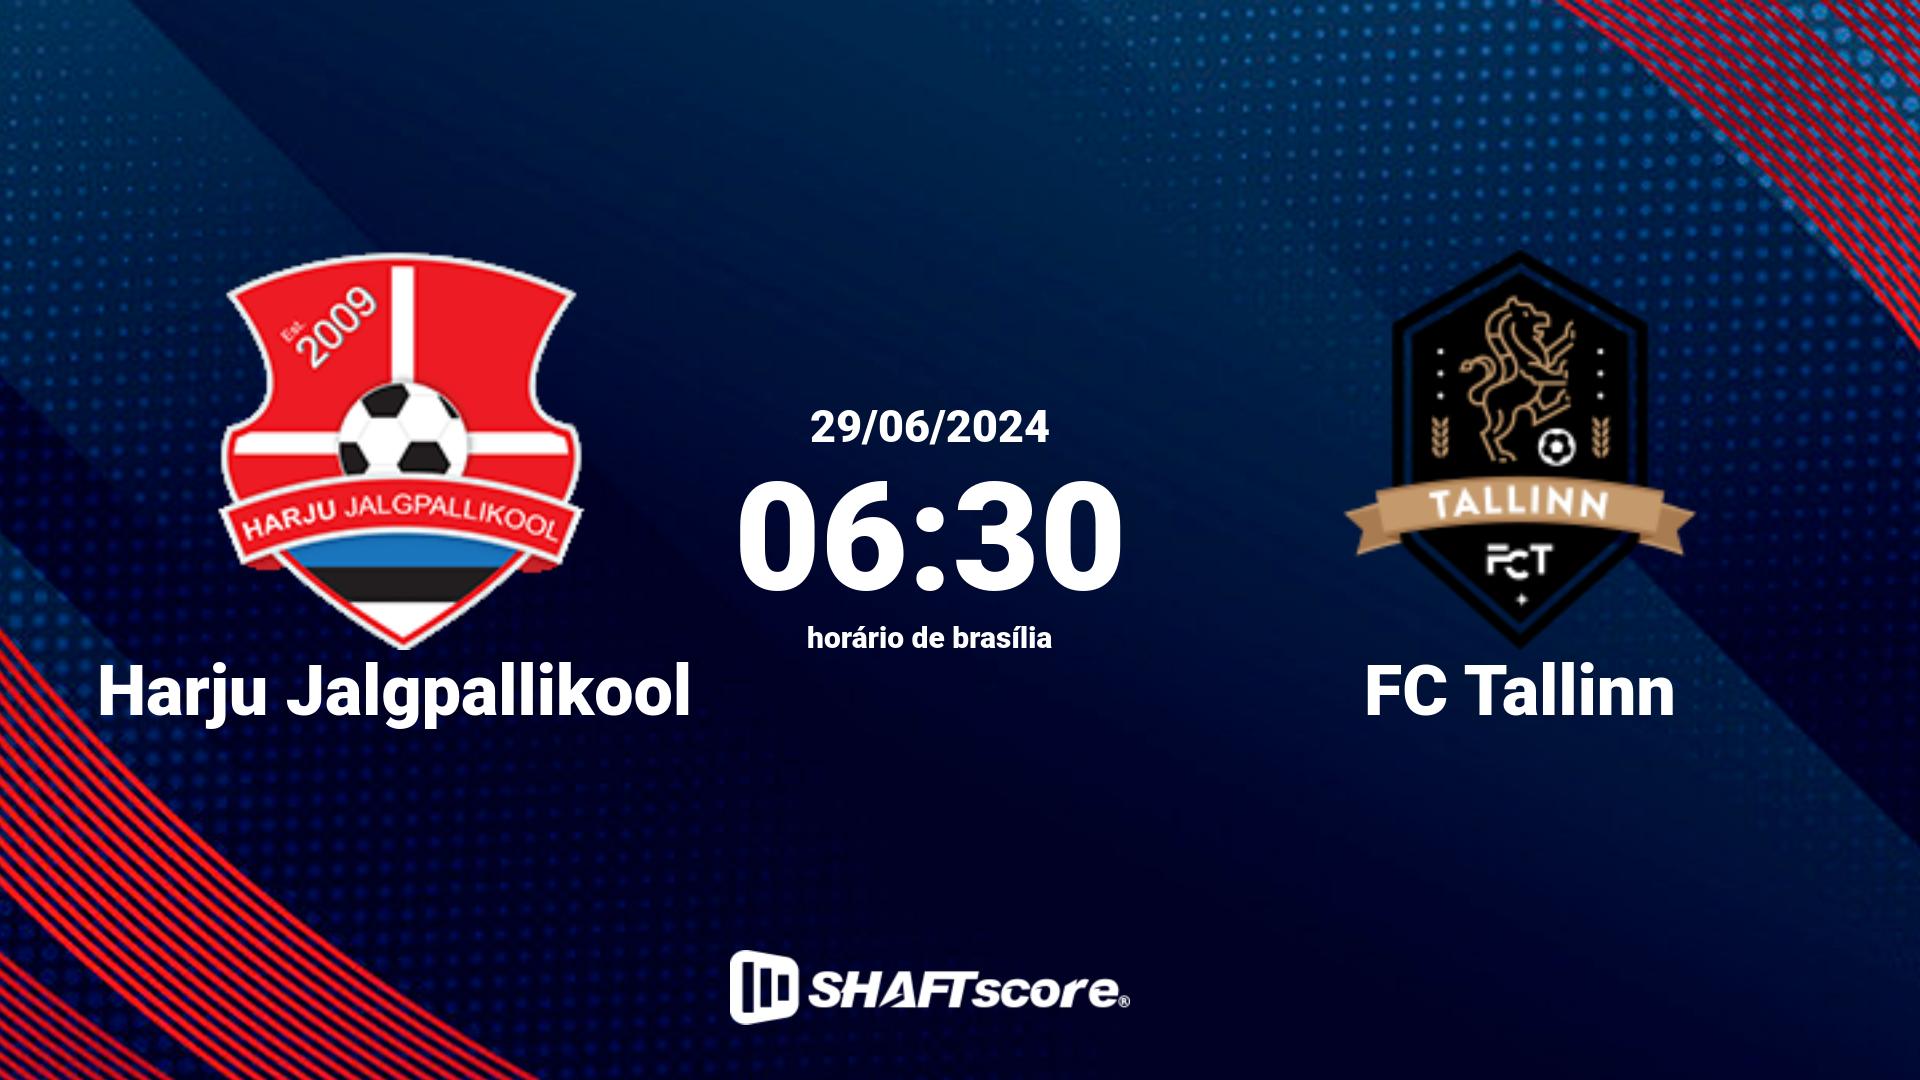 Estatísticas do jogo Harju Jalgpallikool vs FC Tallinn 29.06 06:30